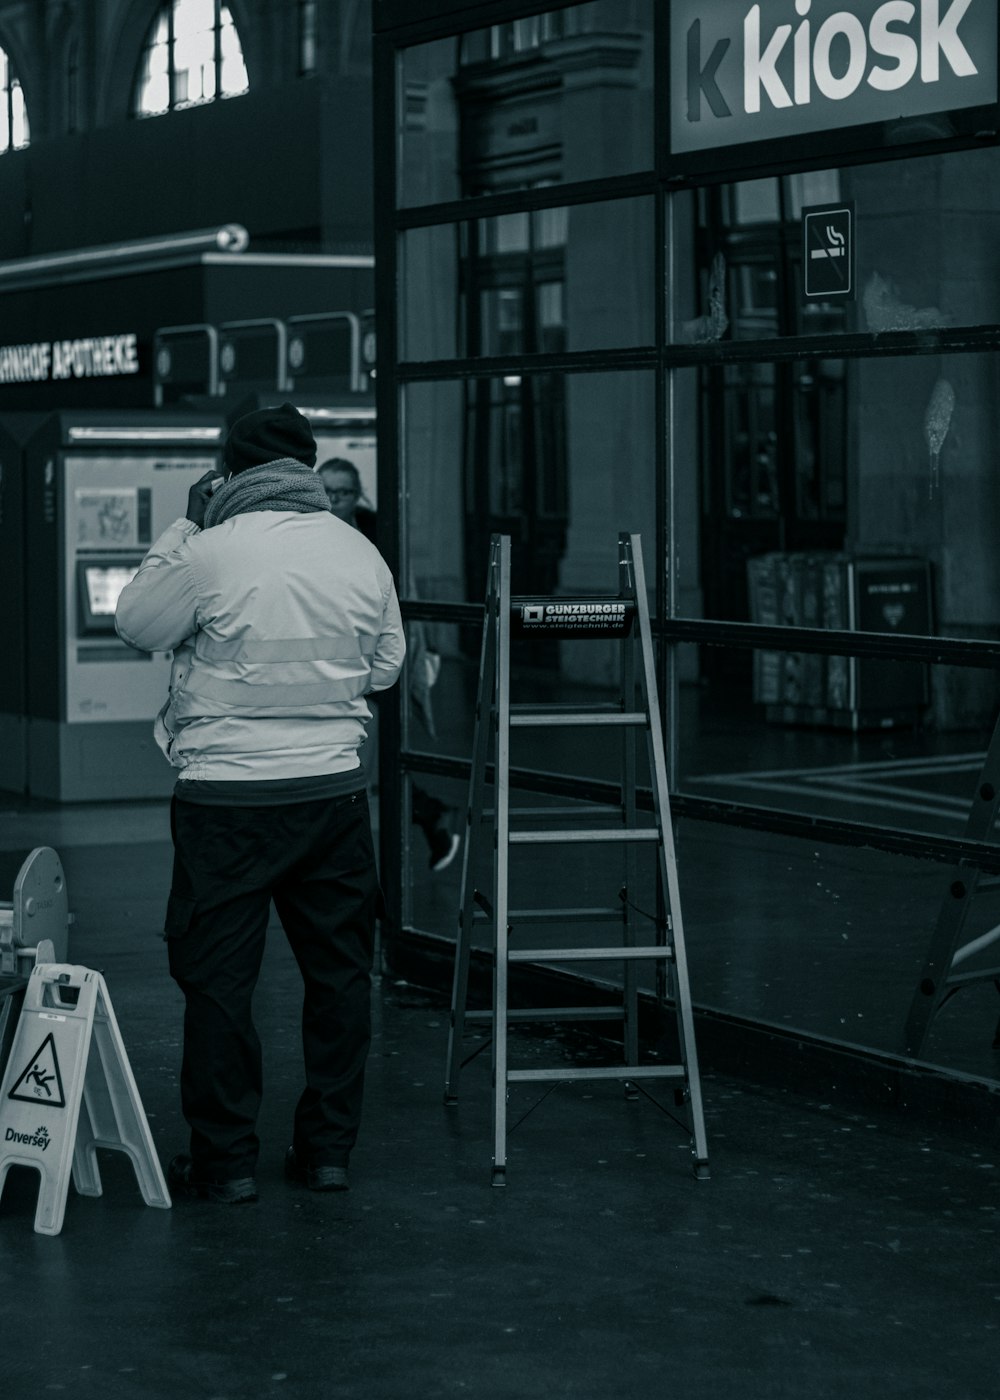 Un homme debout devant un kiosque parlant au téléphone